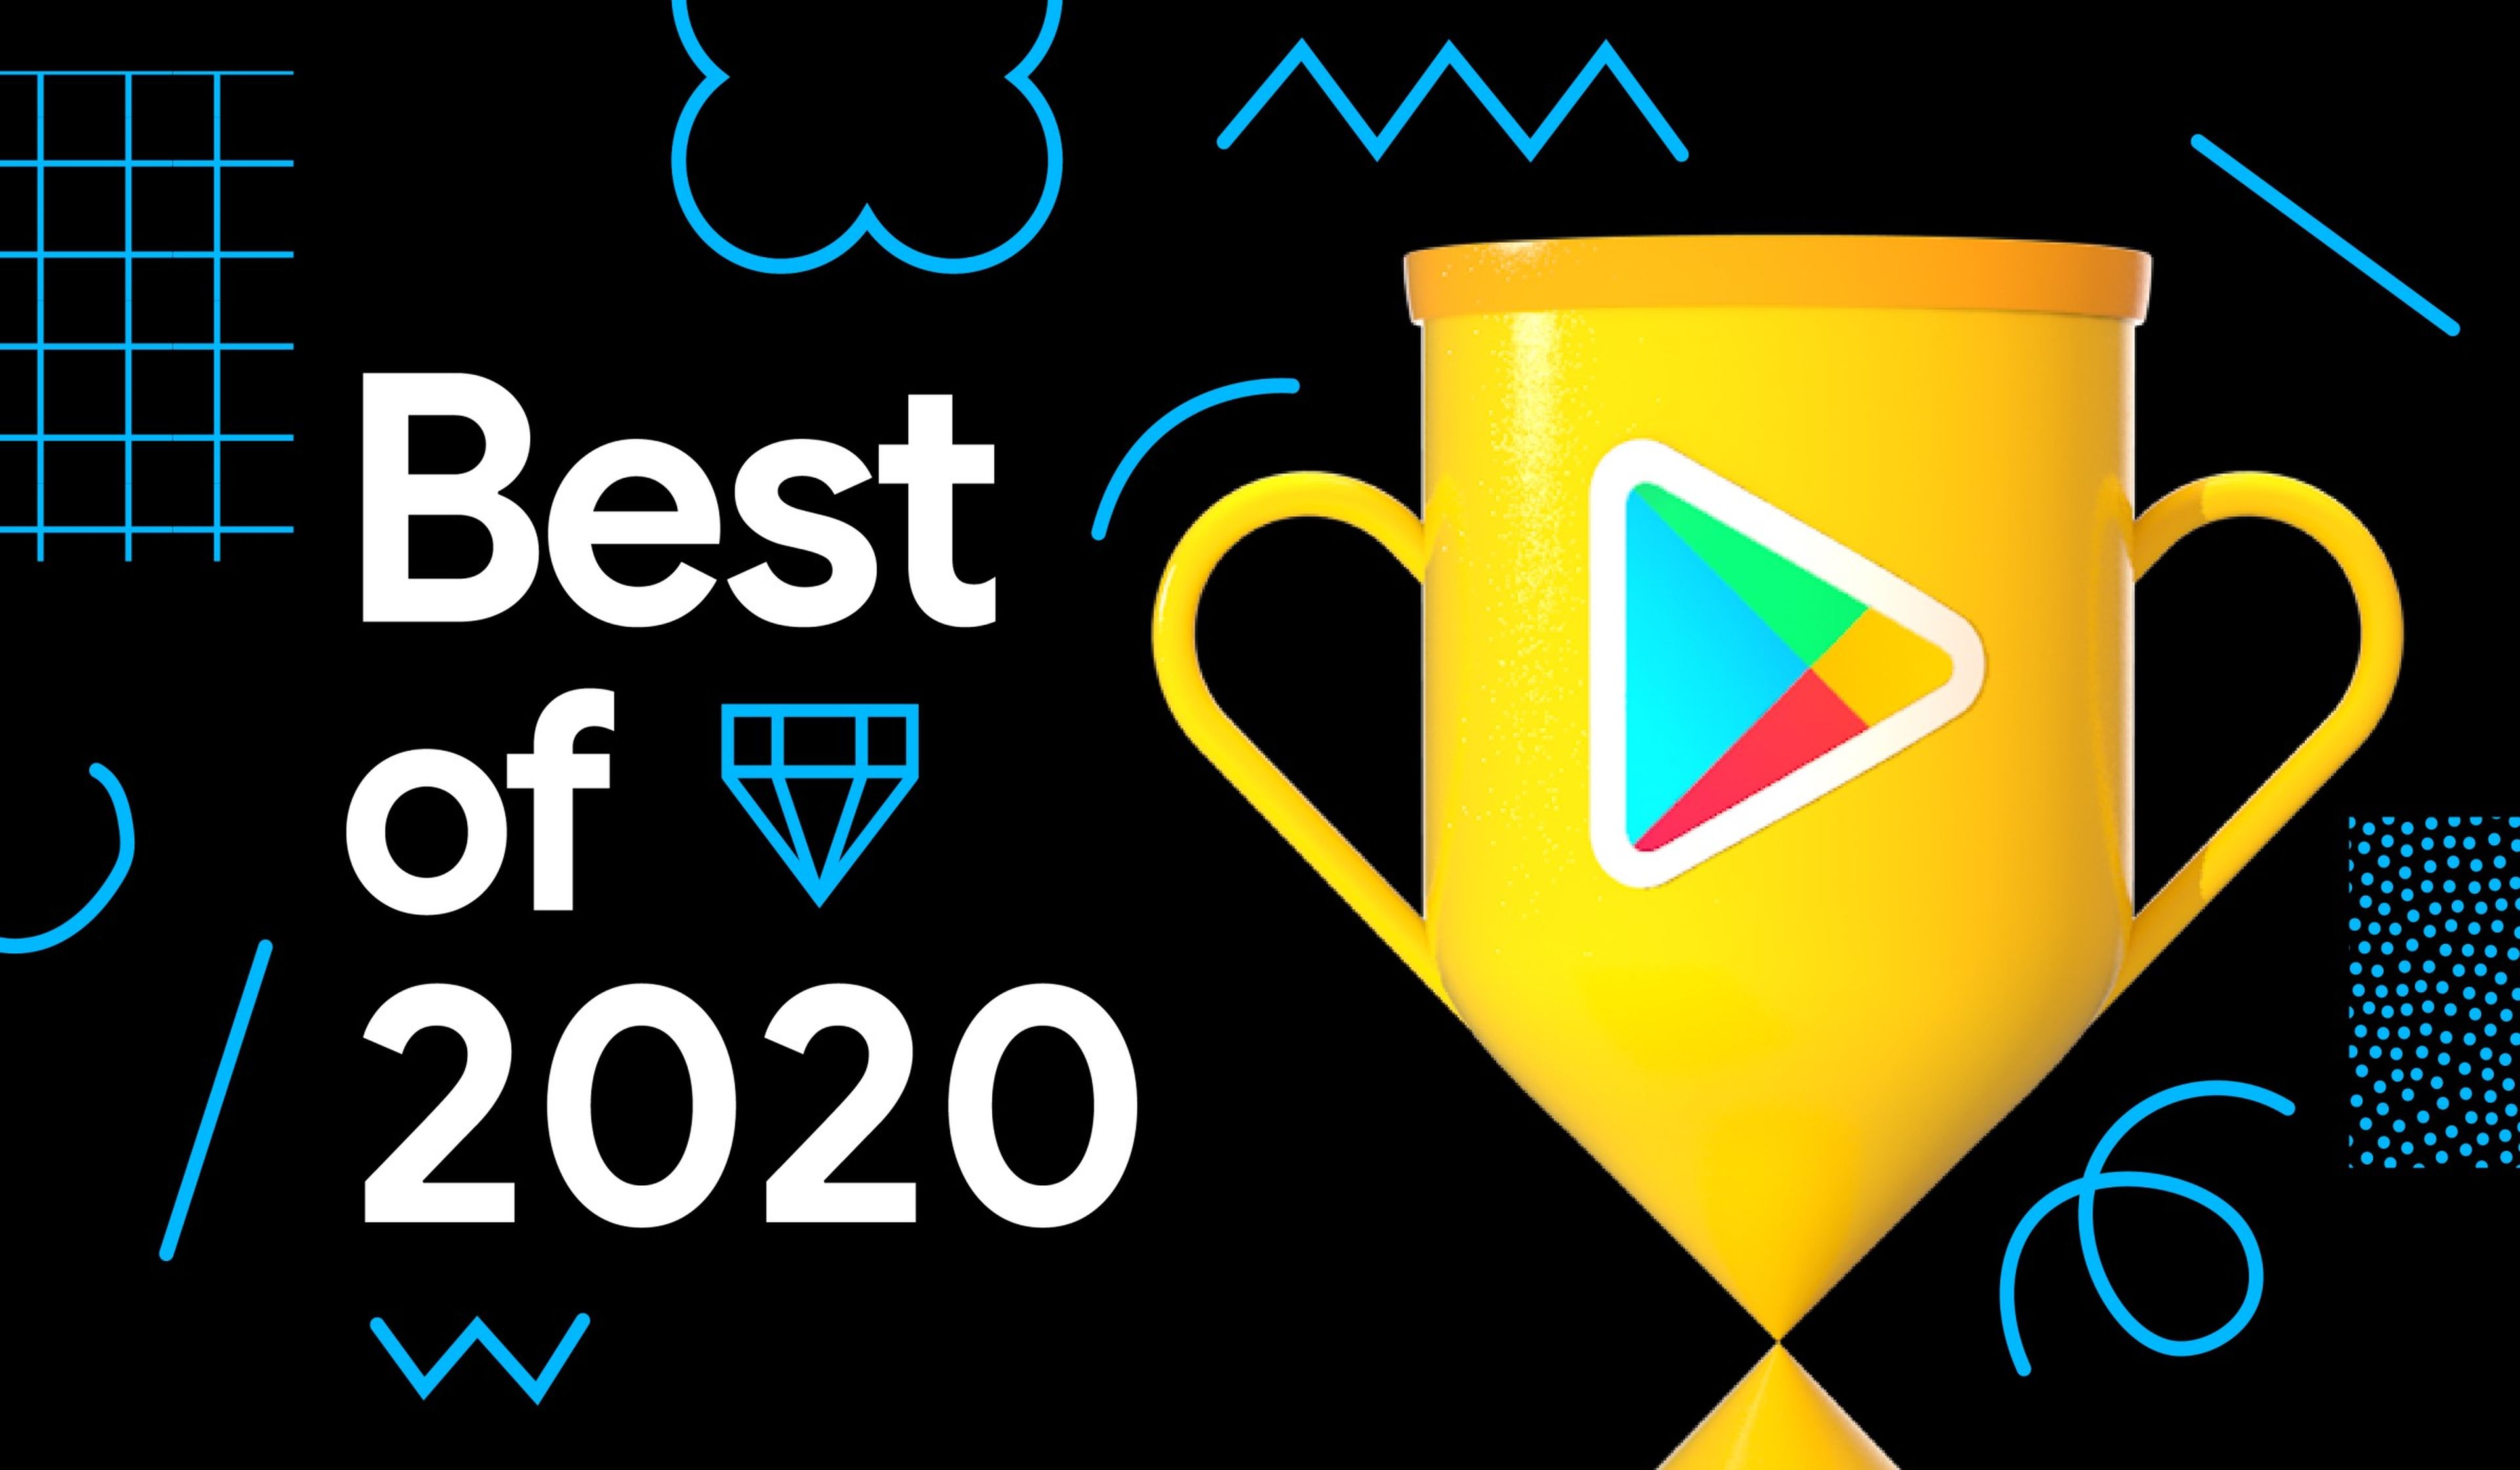 Mejores apps y juegos de 2020 en Google Play Store